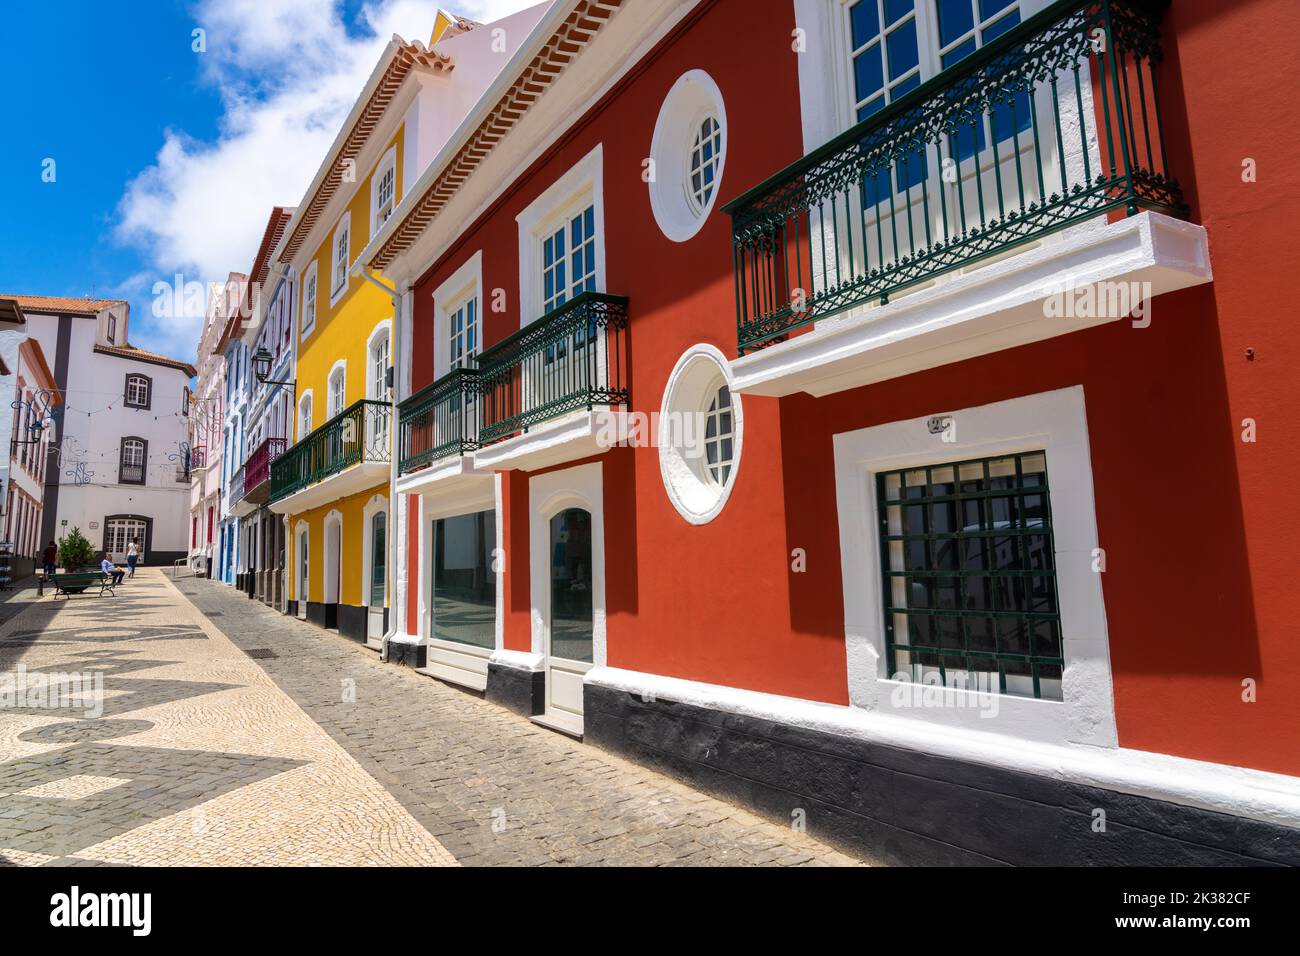 Les façades pastel colorées des bâtiments de style néoclassique le long de la passerelle piétonne de la Rua da Esperanca se terminant au Teatro Angrense rose, un théâtre d'art de performance à Angra do Heroismo, île de Terceira, Açores, Portugal. Banque D'Images